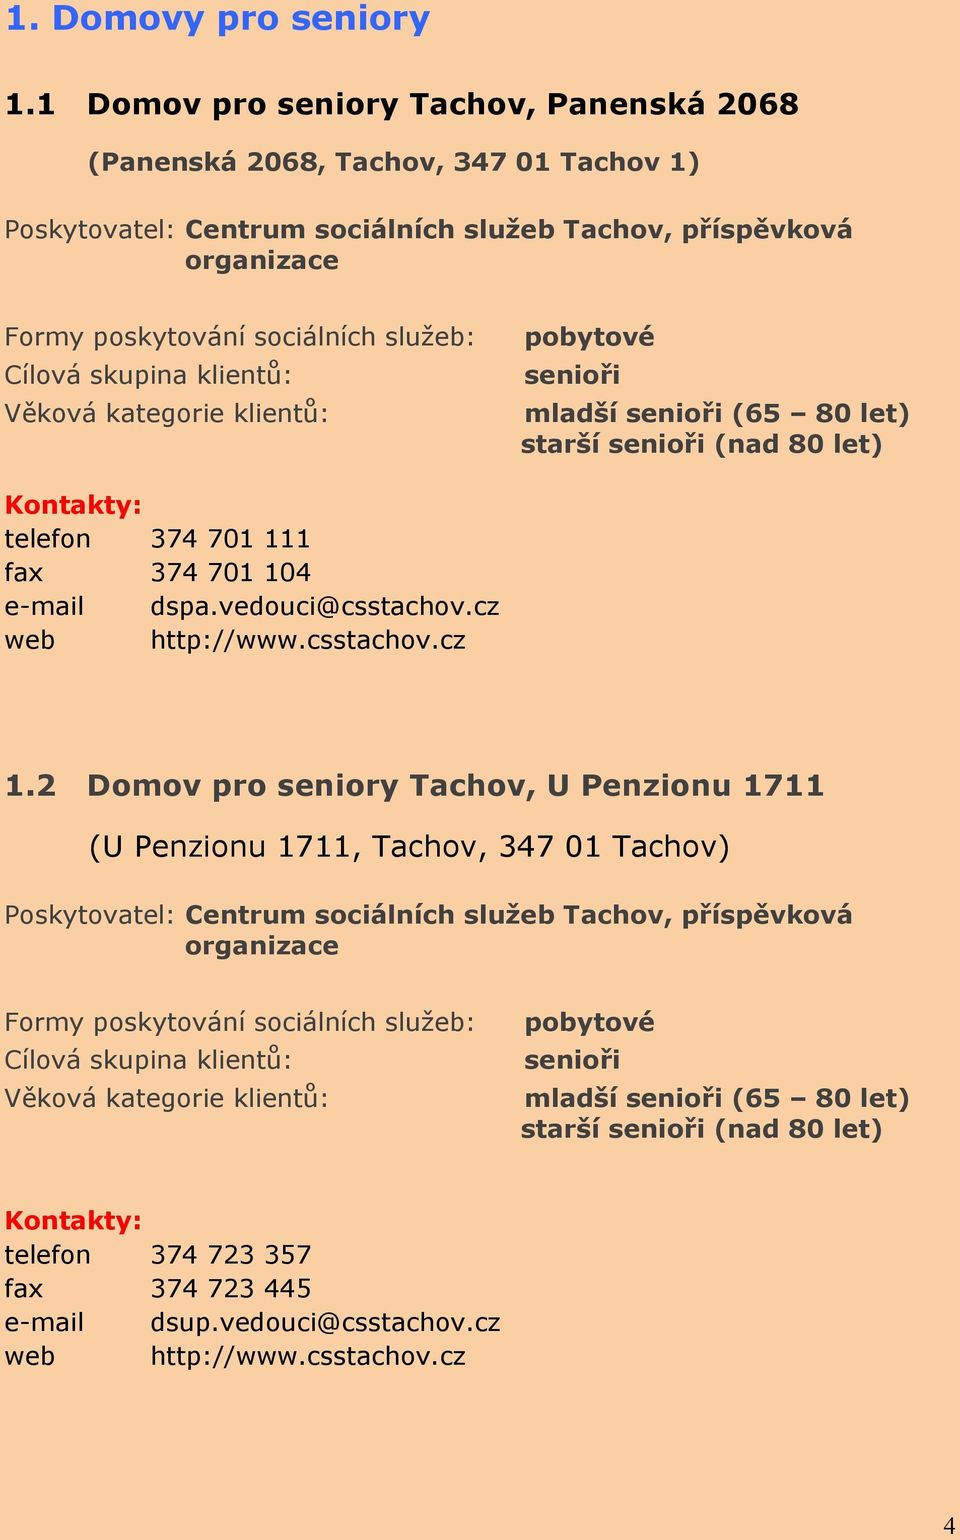 organizace pobytové telefon 374 701 111 fax 374 701 104 e-mail dspa.vedouci@csstachov.cz web http://www.csstachov.cz 1.